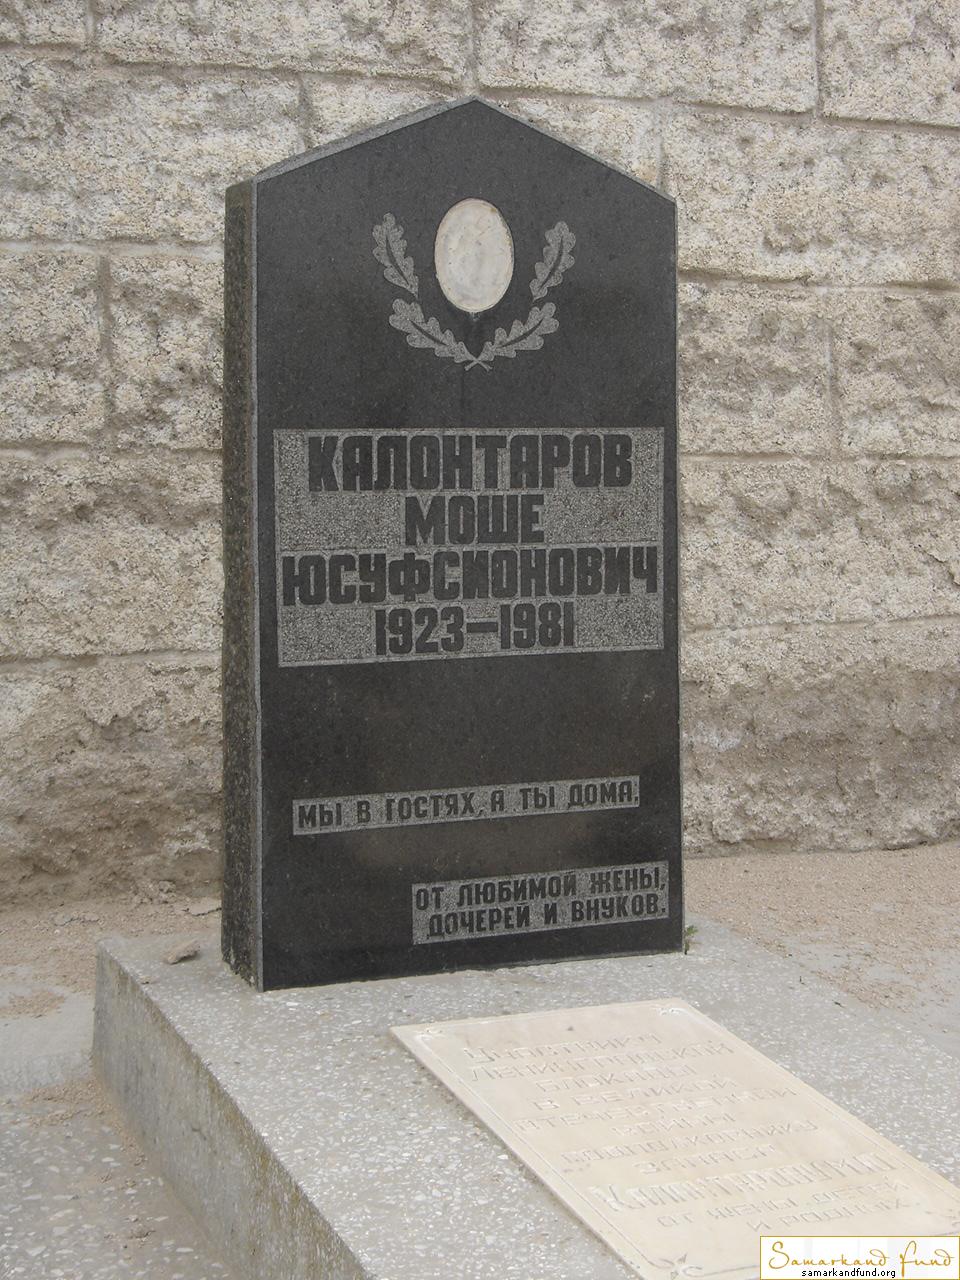 Калонтаров Моше Юсуфсионович  1923 - 1981 зах. 292.114  №28.JPG